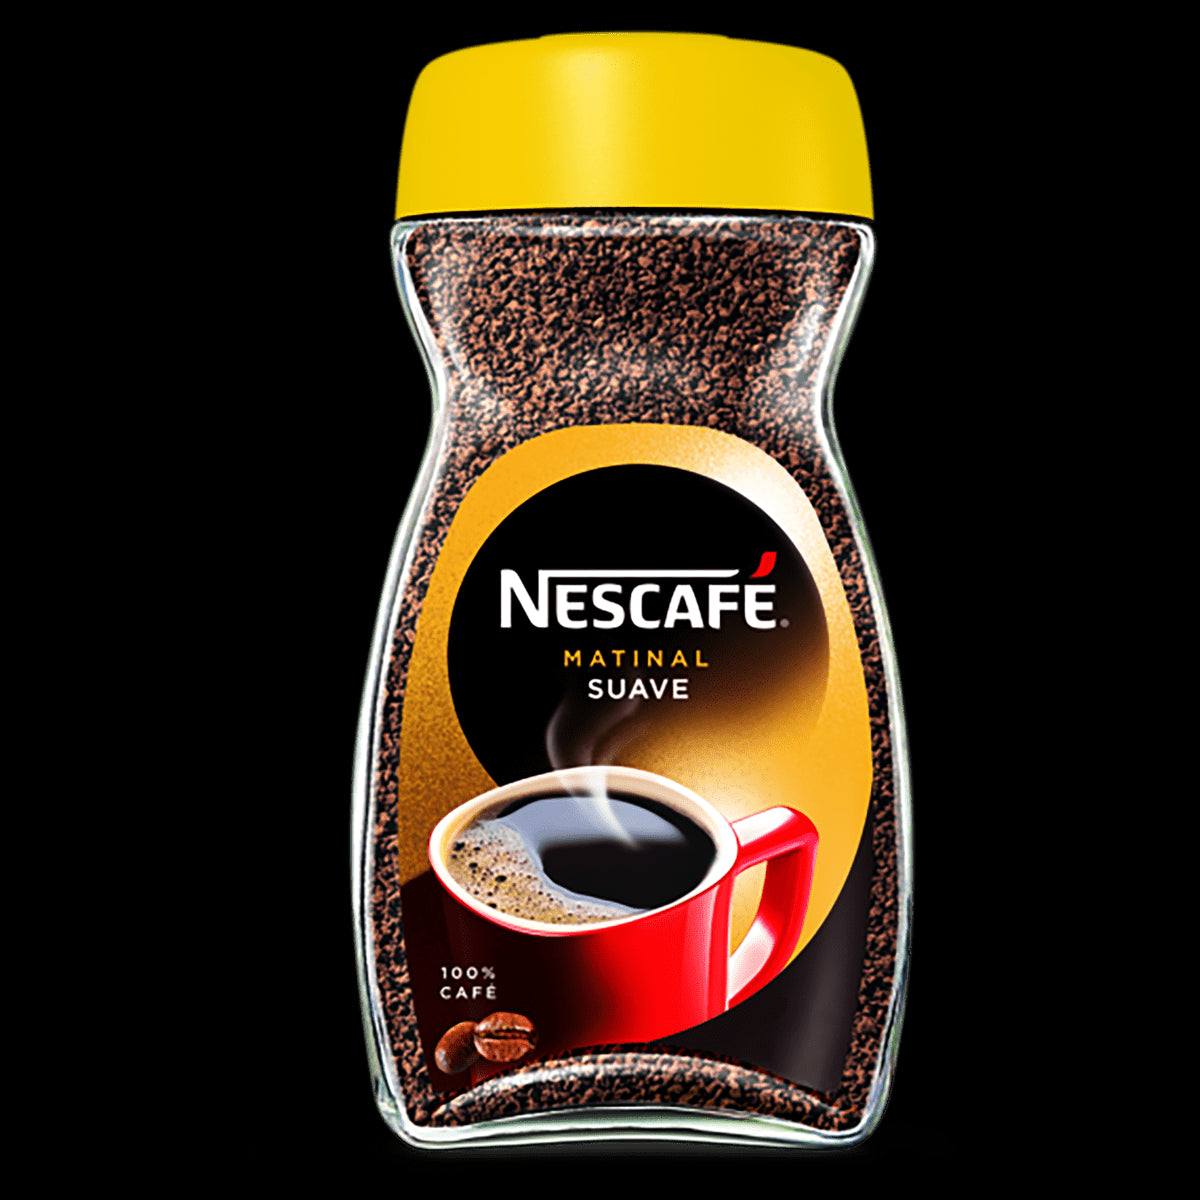 Nescafe Matinal Suave Coffee (200g) Nescafe